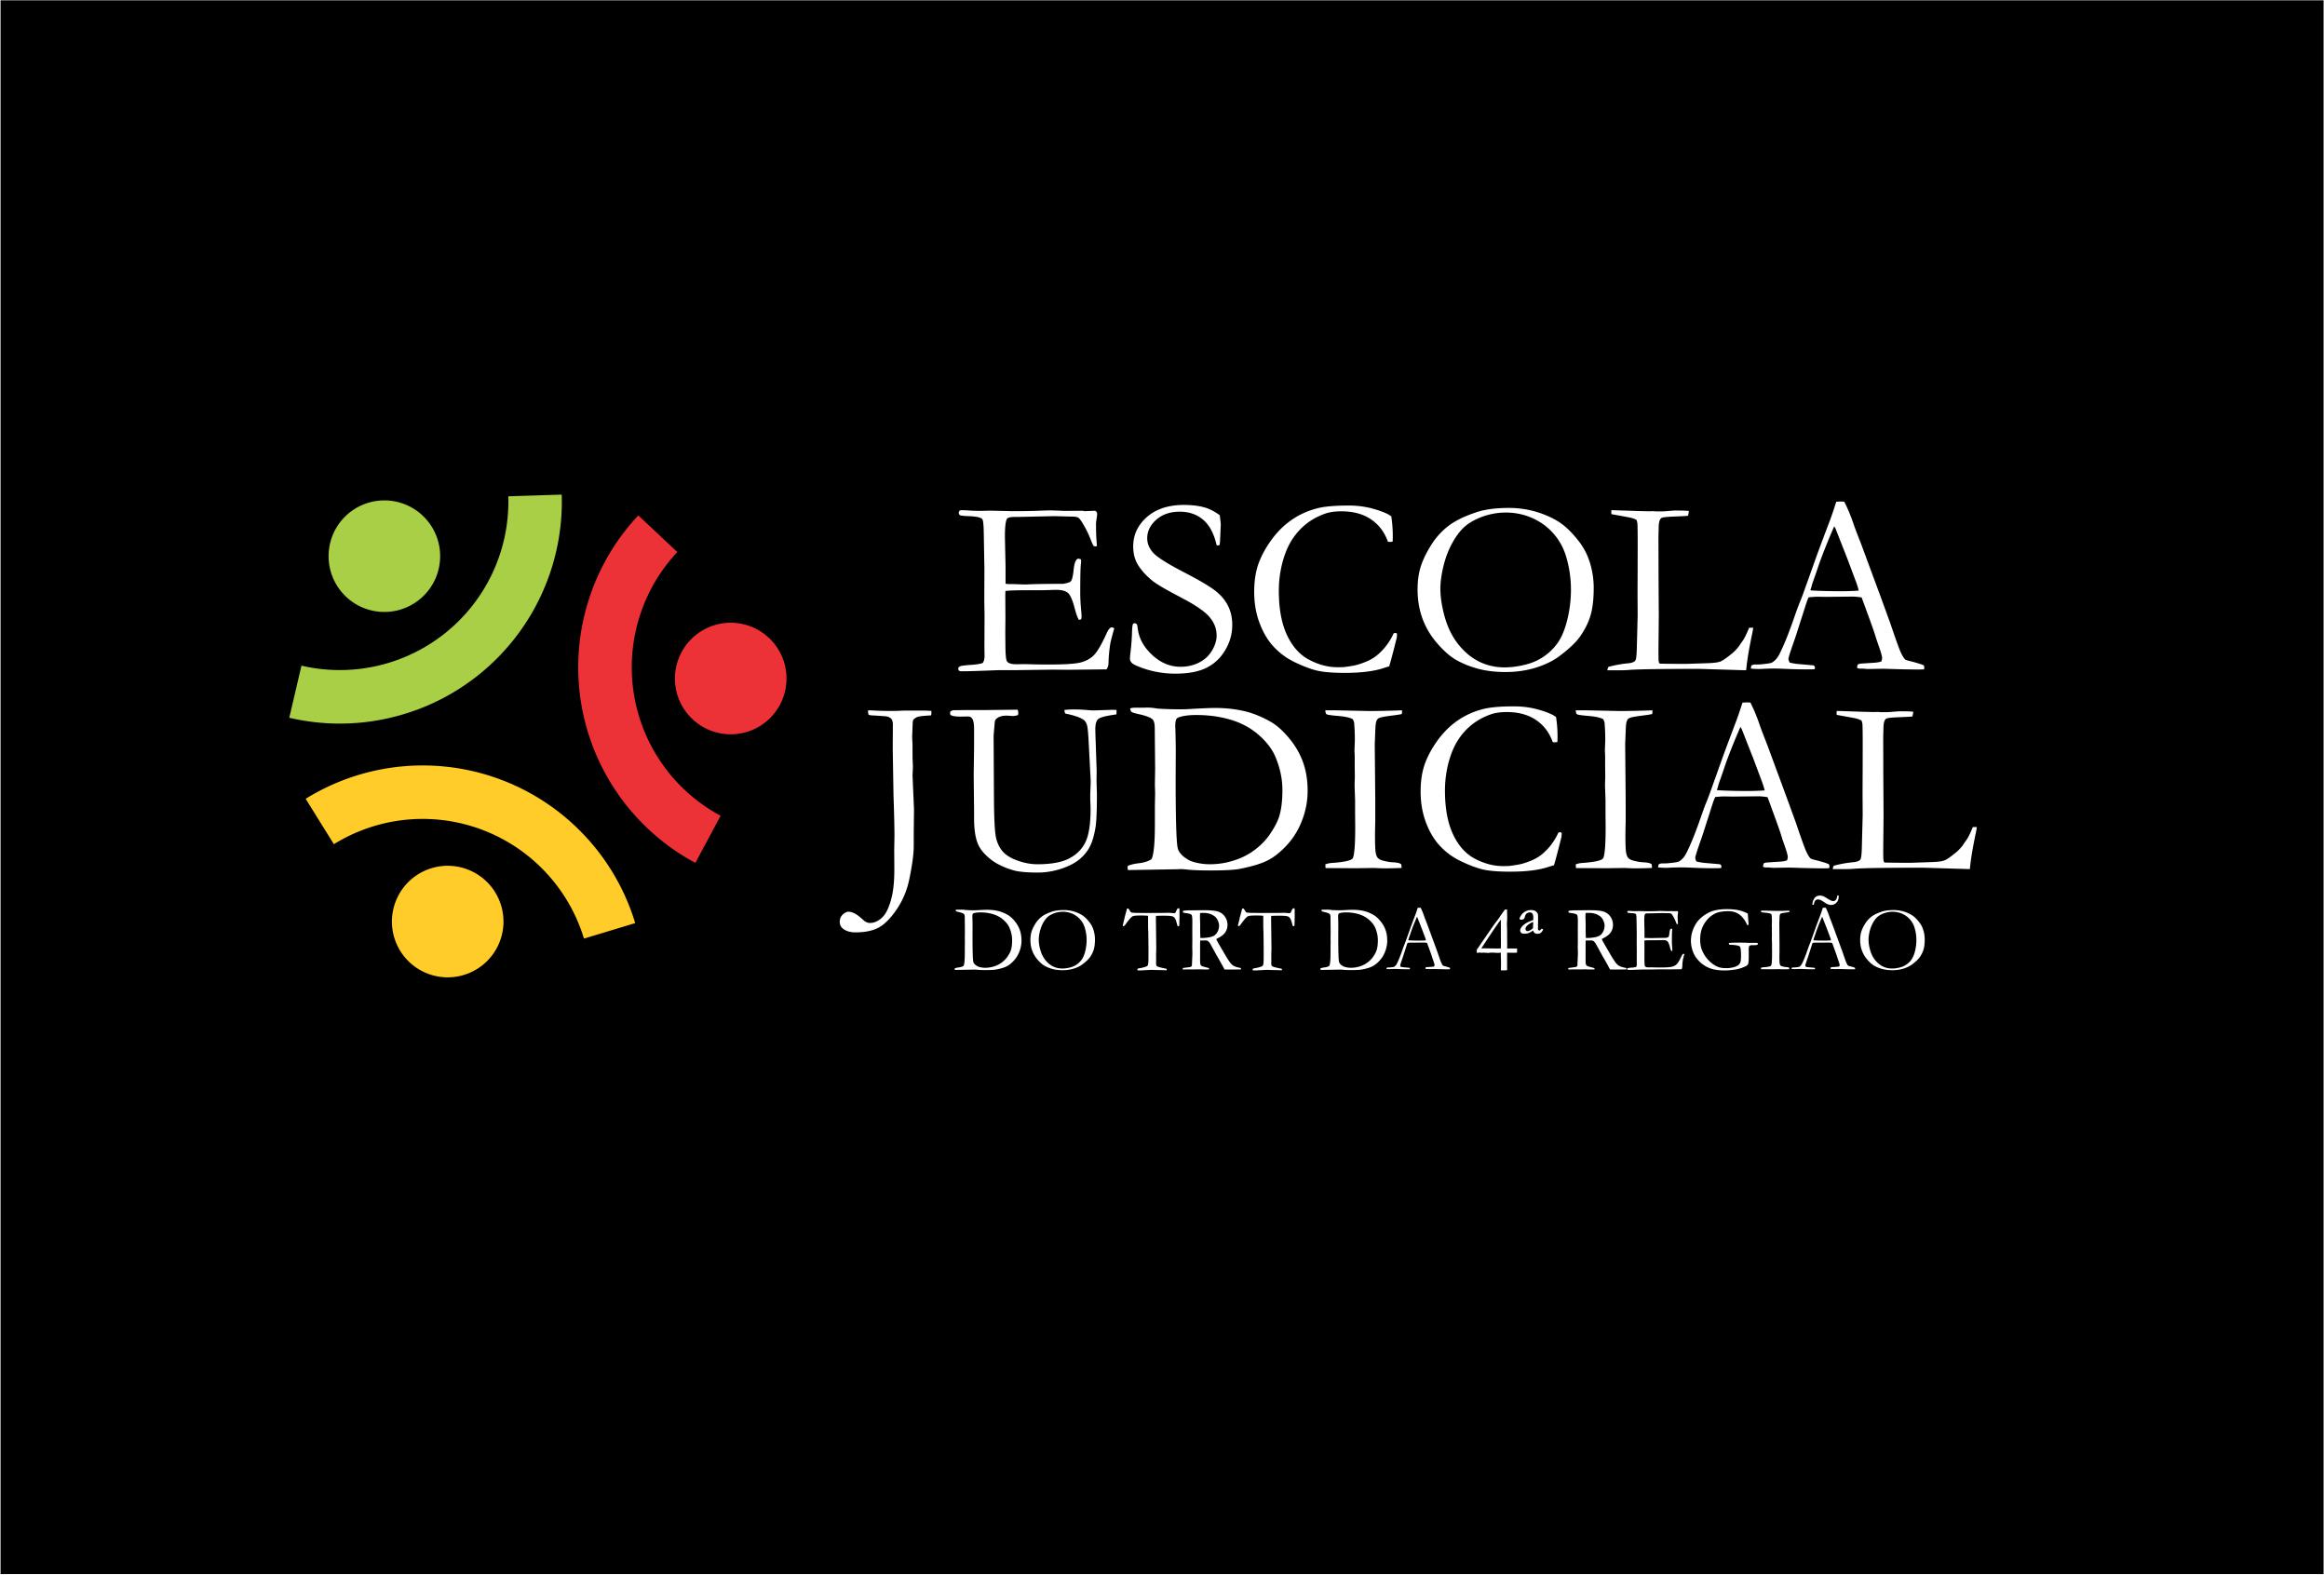 Banner retangular com fundo preto. Ao centro, logotipo da Escola Judicial do TRT4.